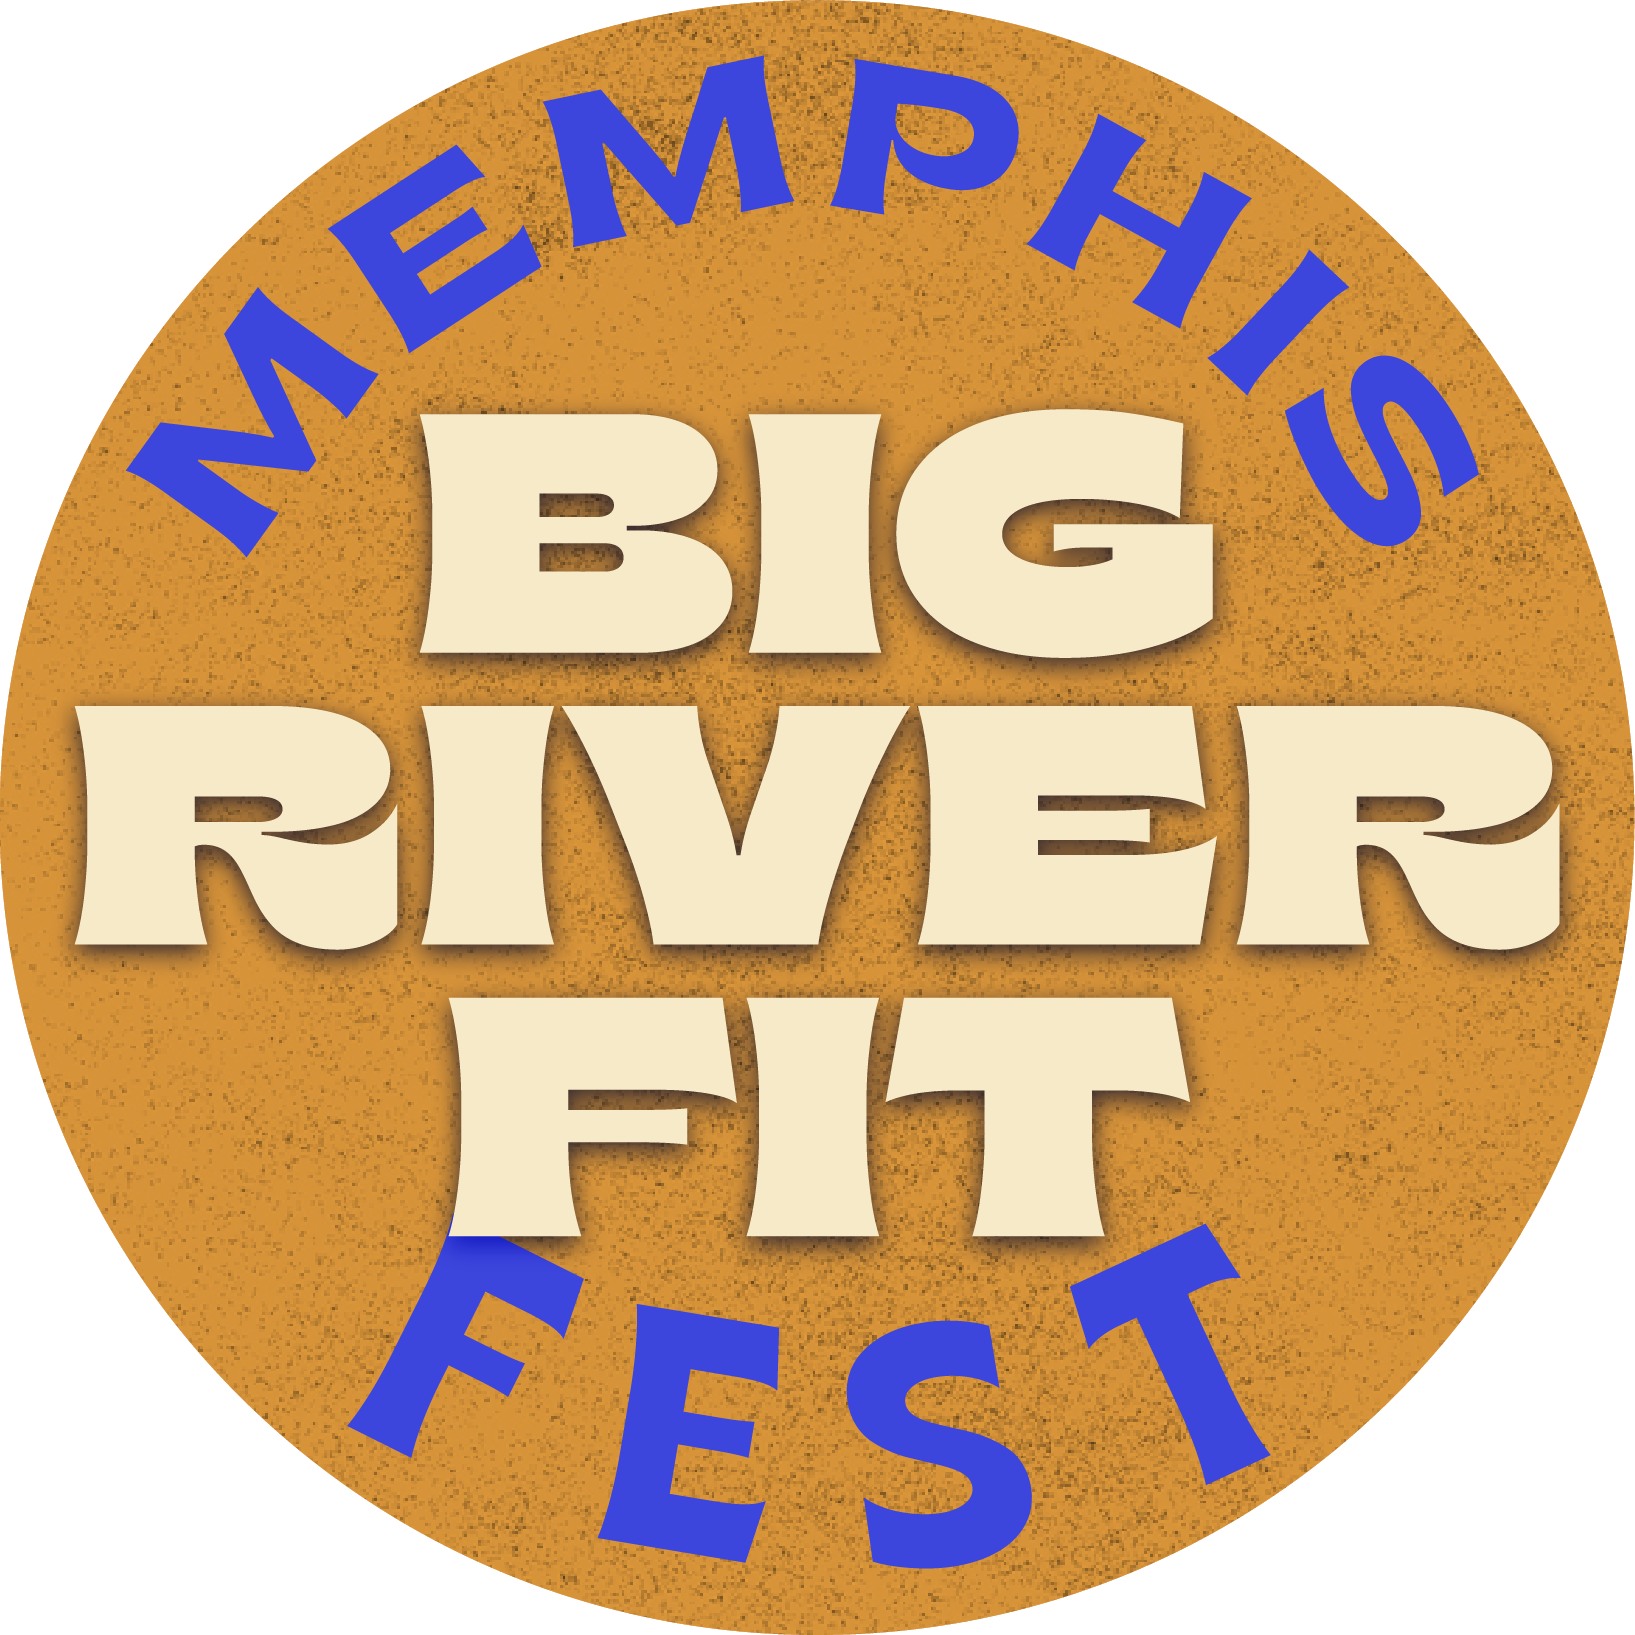 Memphis fitness festival logo.